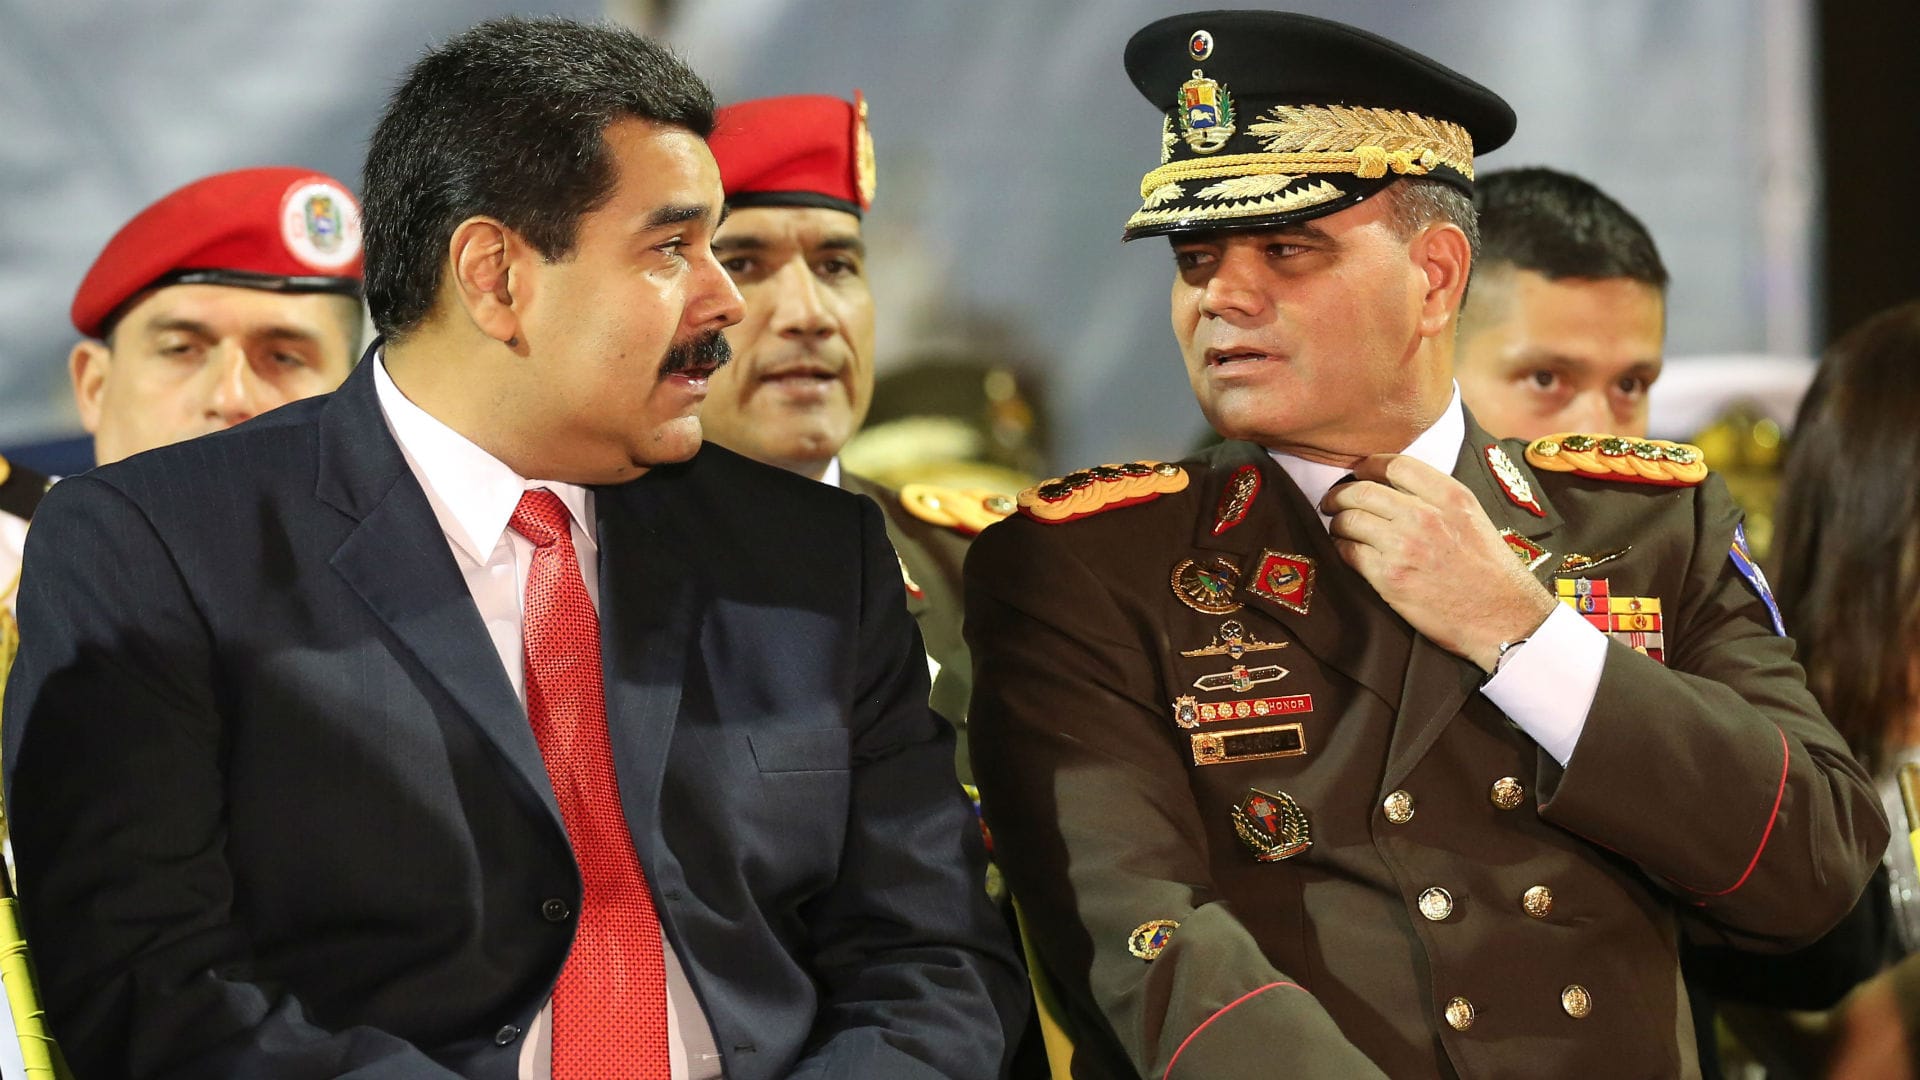 El ministro de Defensa venezolano admite que varios policías han cometido “atrocidades”